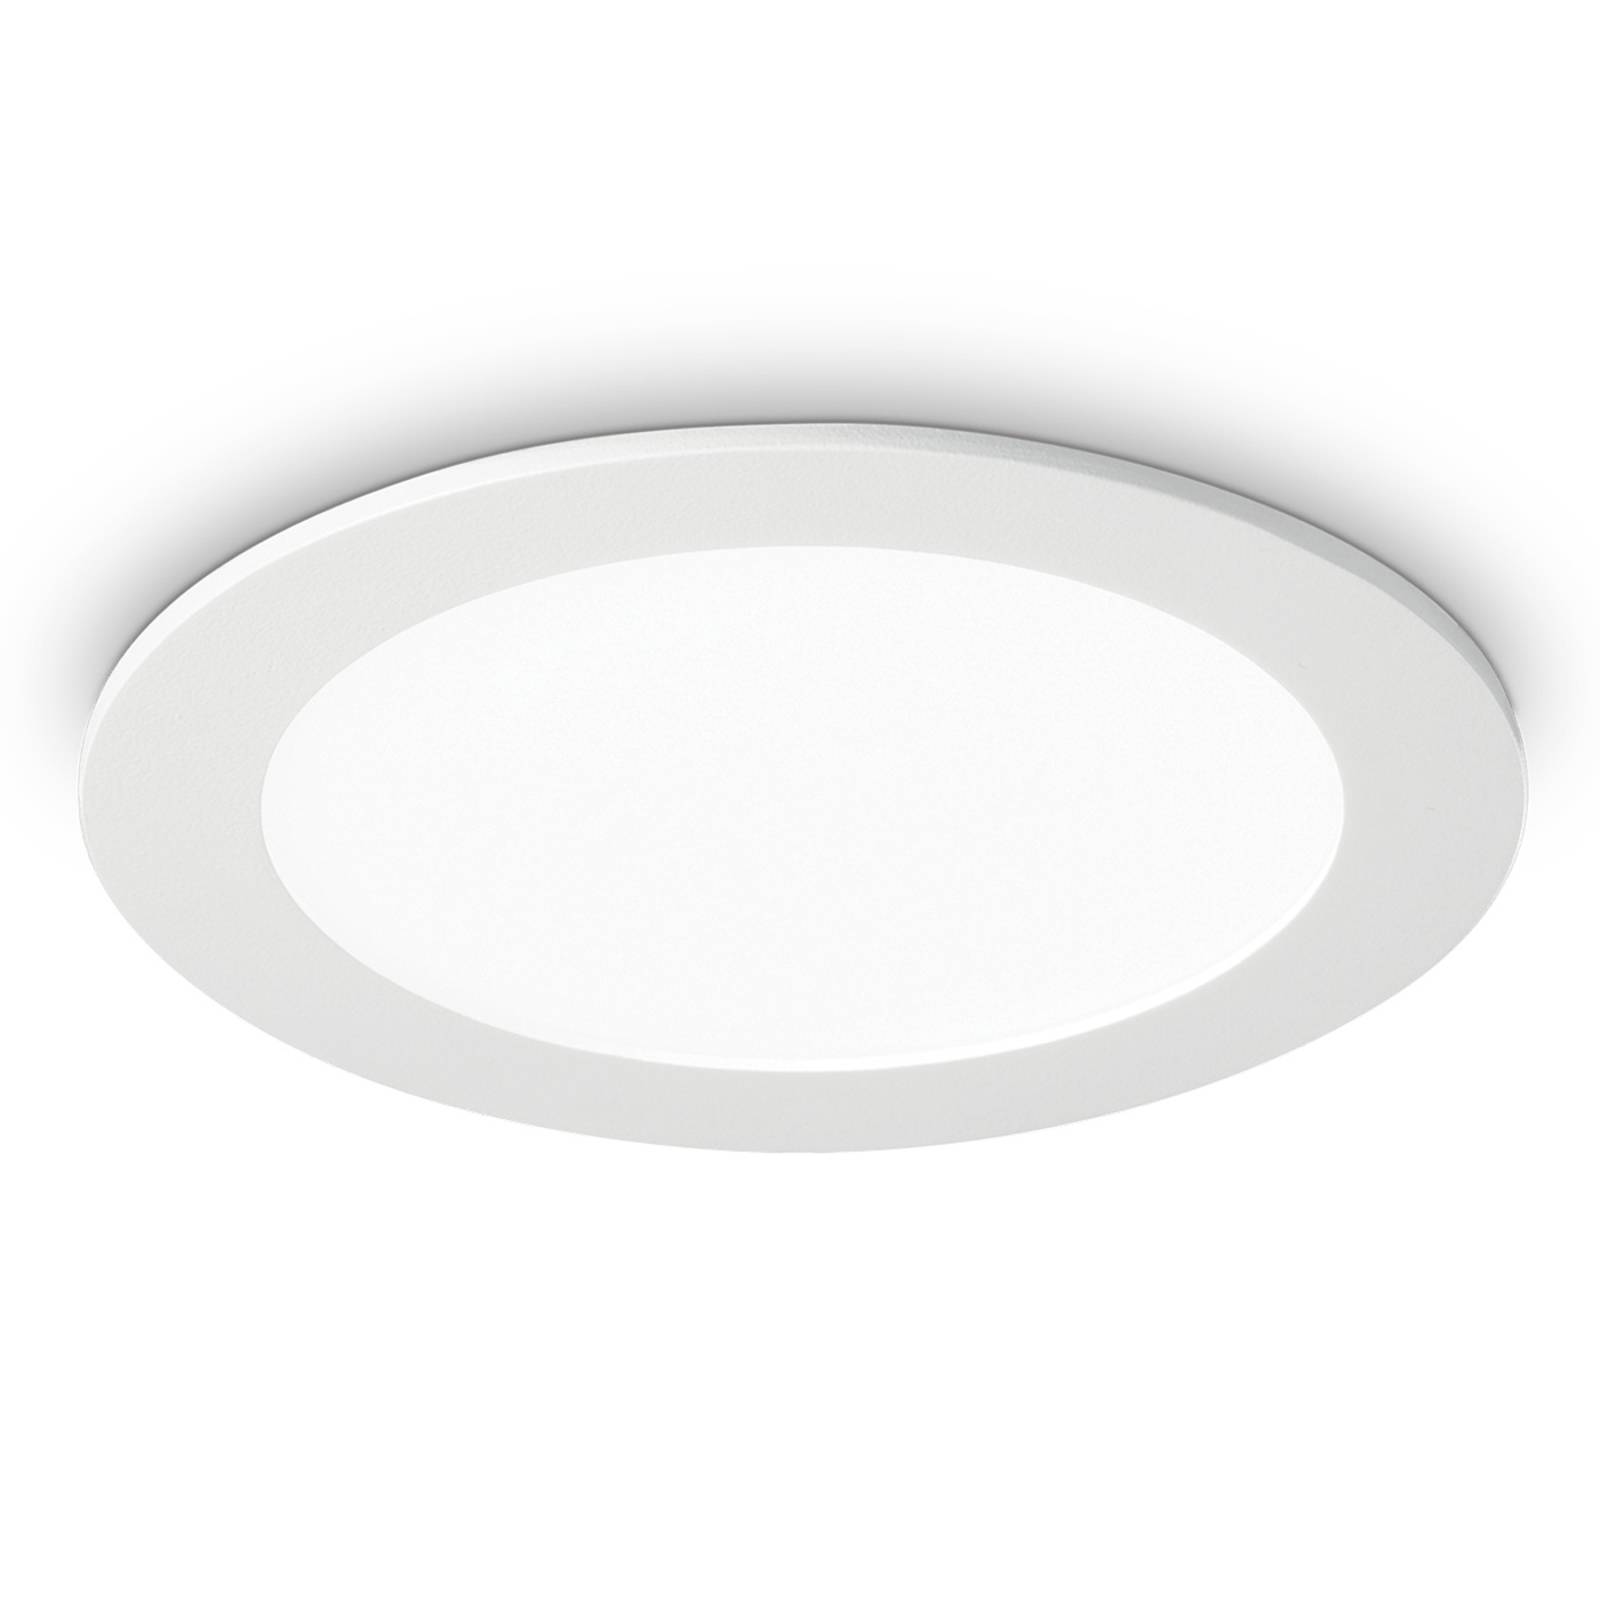 Ideallux LED stropní světlo Groove round 3 000 K 22,7cm